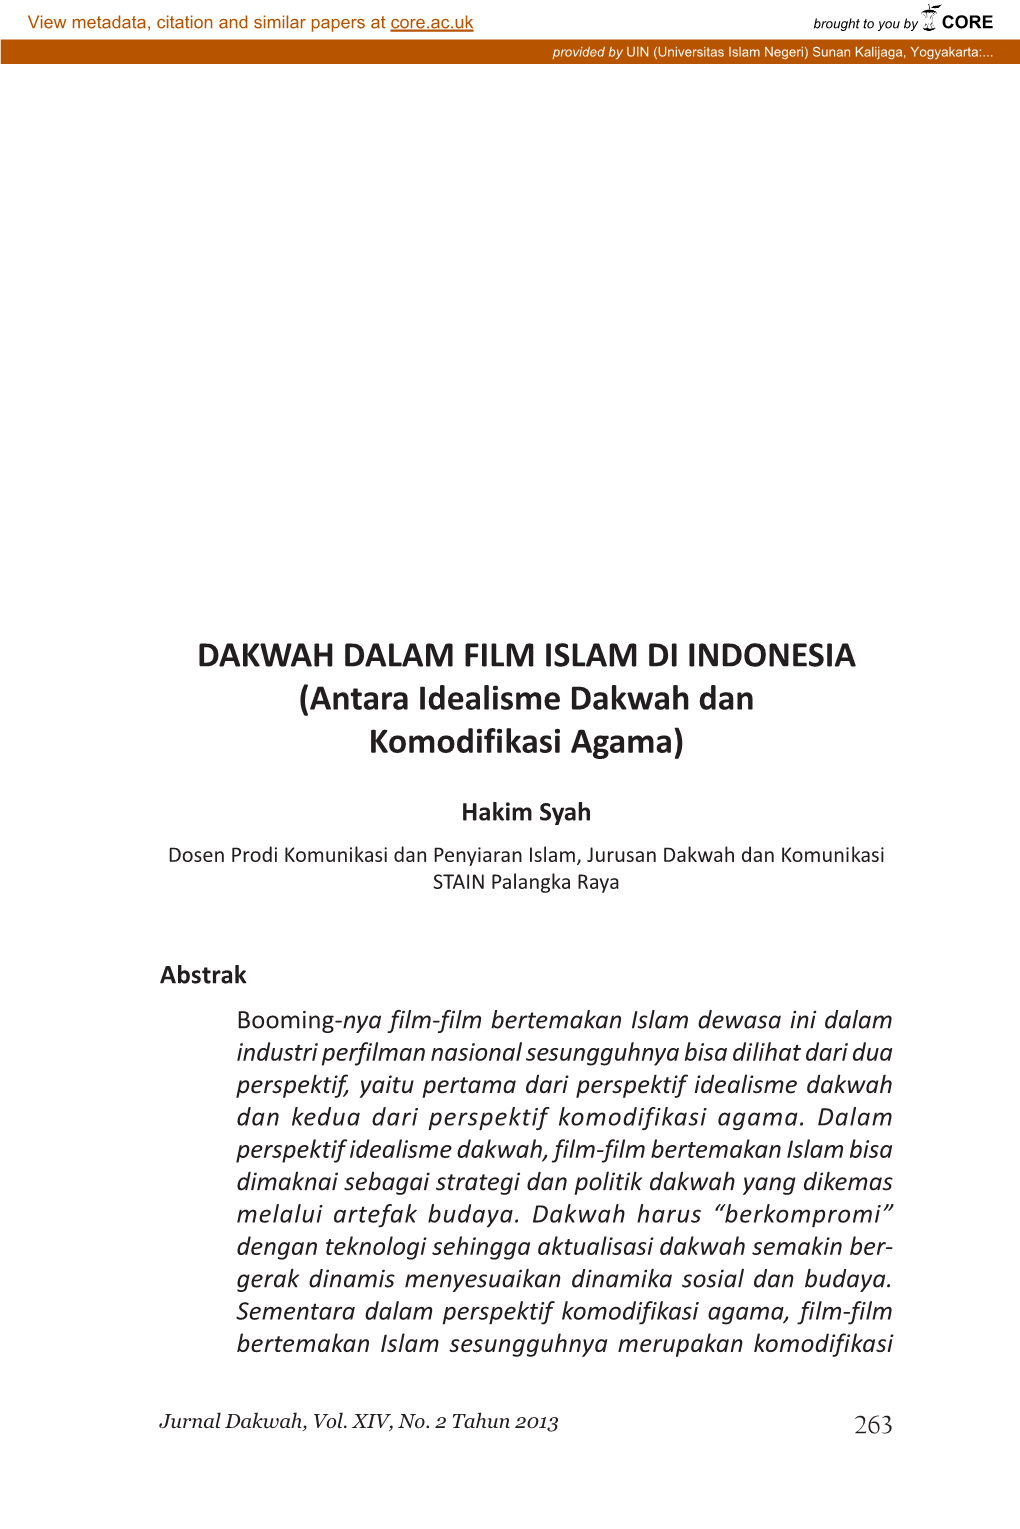 DAKWAH DALAM FILM ISLAM DI INDONESIA (Antara Idealisme Dakwah Dan Komodifikasi Agama)